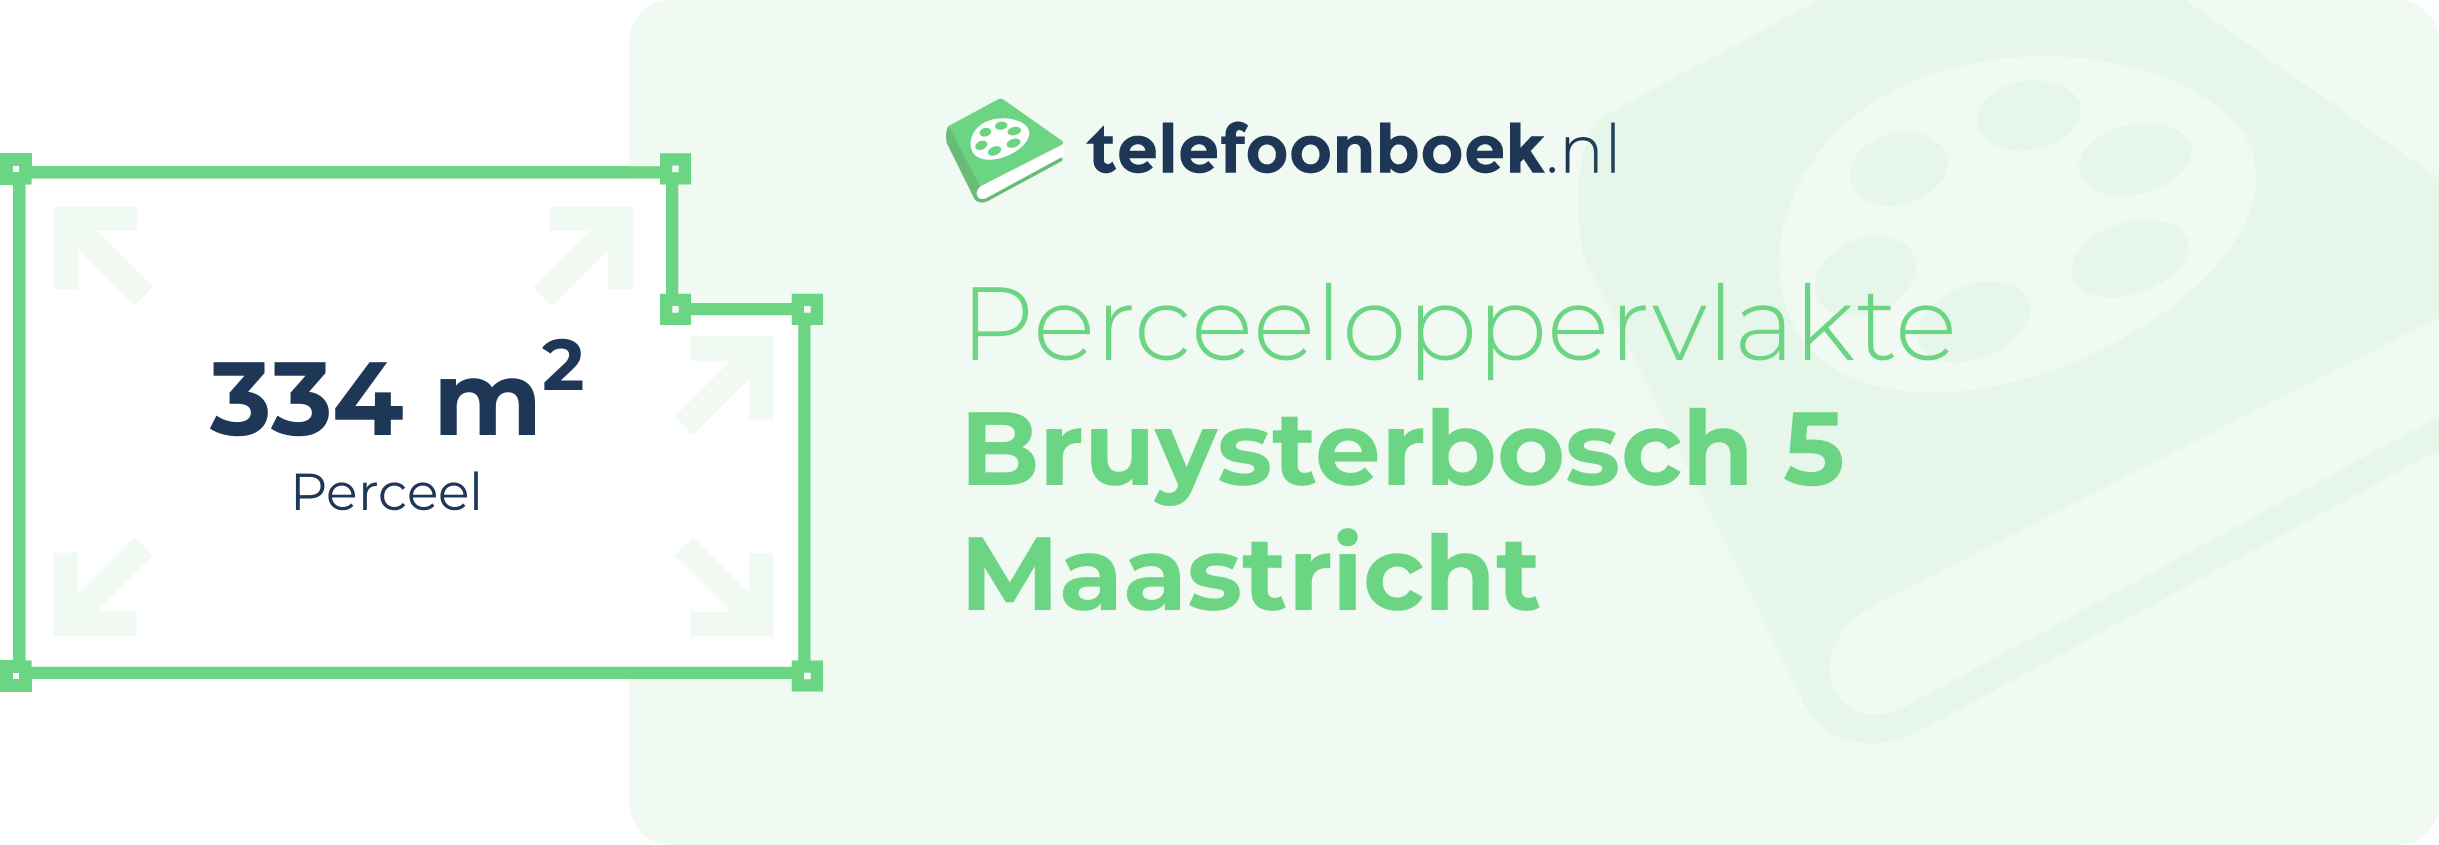 Perceeloppervlakte Bruysterbosch 5 Maastricht